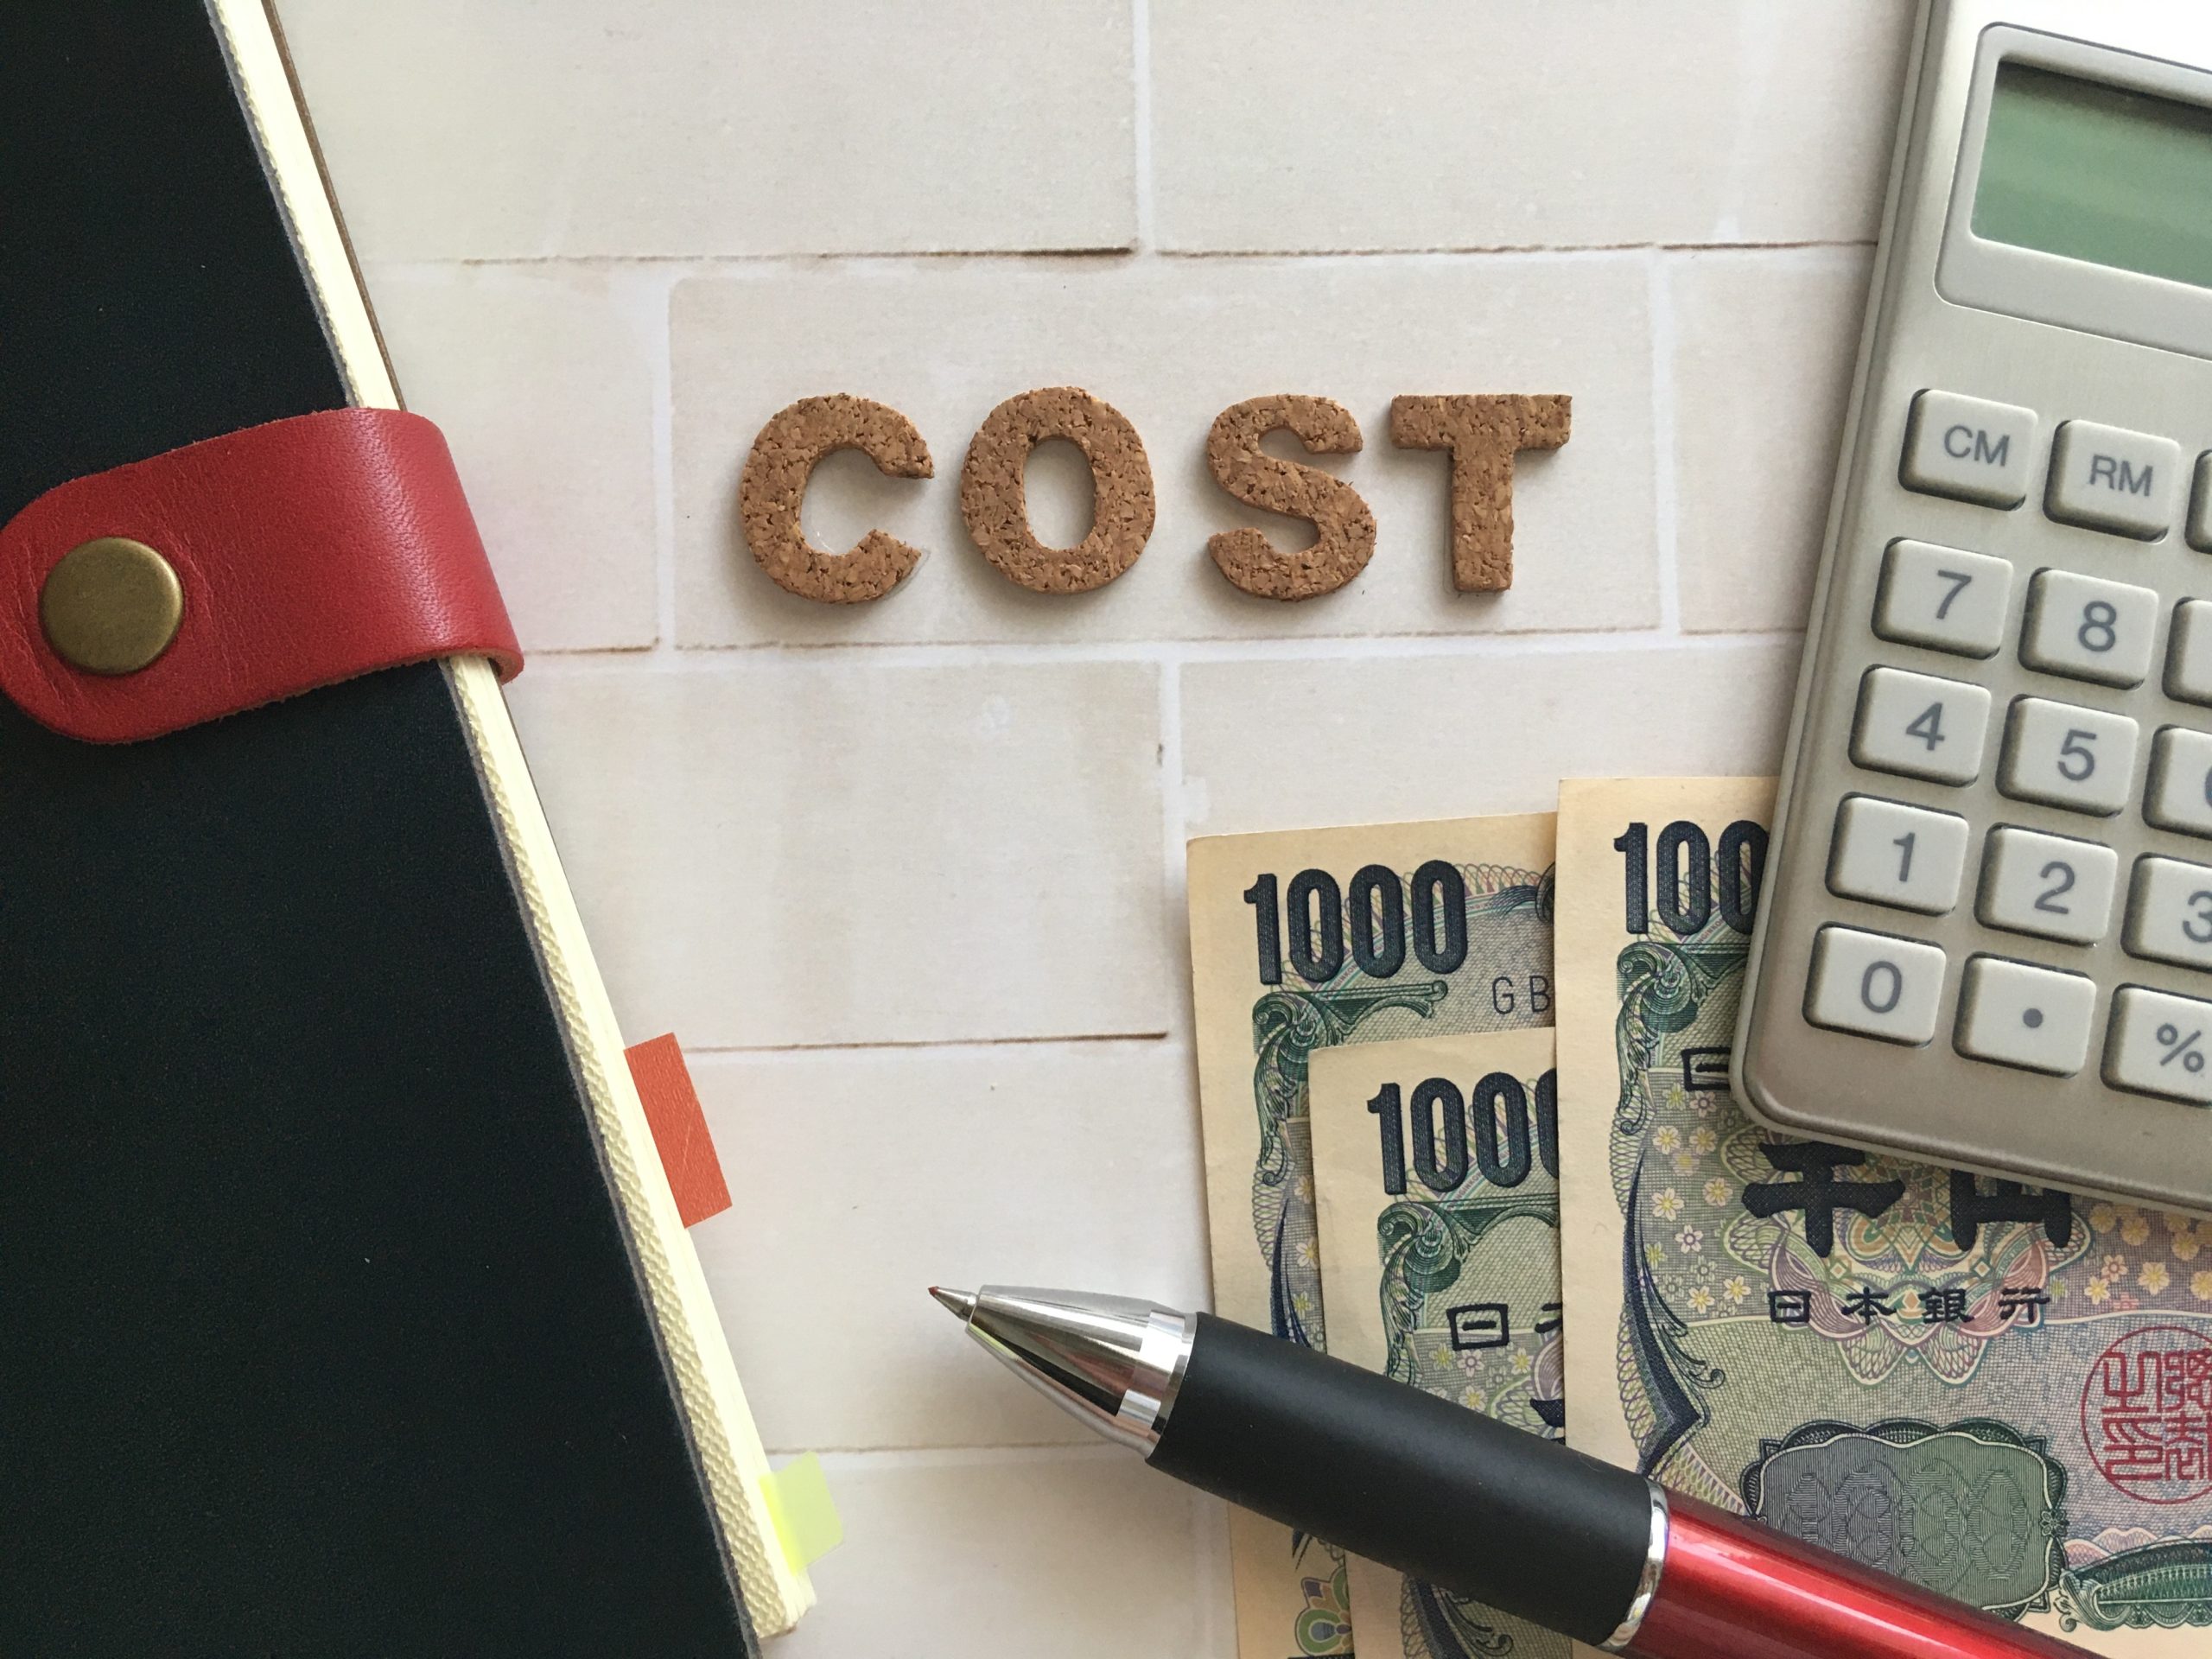 タイルにCOSTというコルク材が貼ってあるのと、3千円と手帳と電卓とボールペンが写ってるイメージ